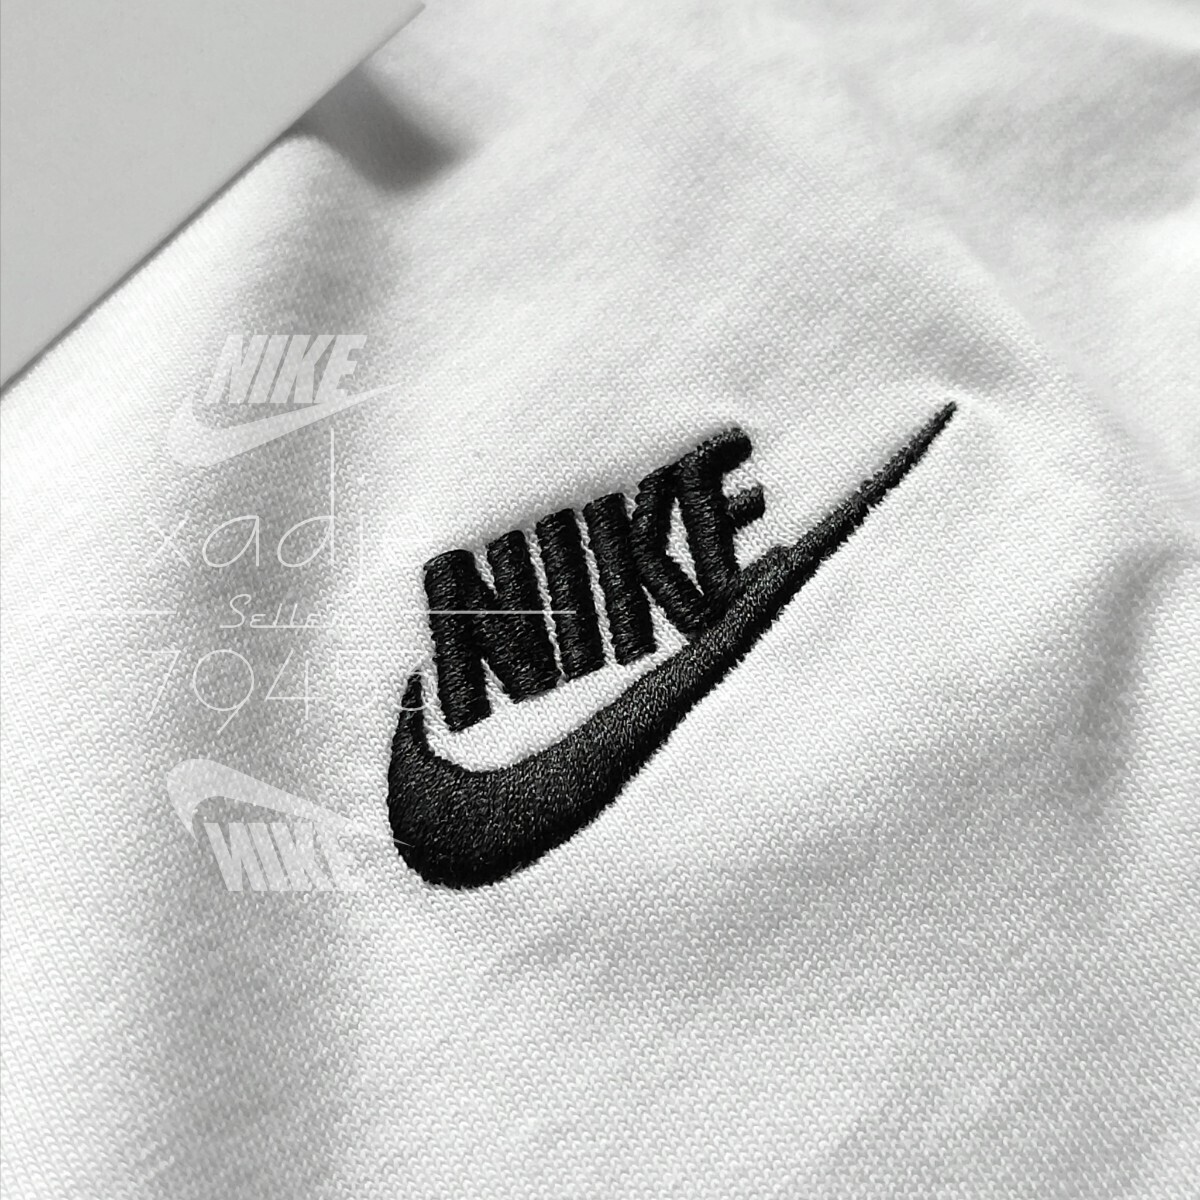  новый товар стандартный товар NIKE Nike NSWf.-chula Logo вышивка длинный рукав long T 2 шт. комплект чёрный черный белый белый одноцветный простой M